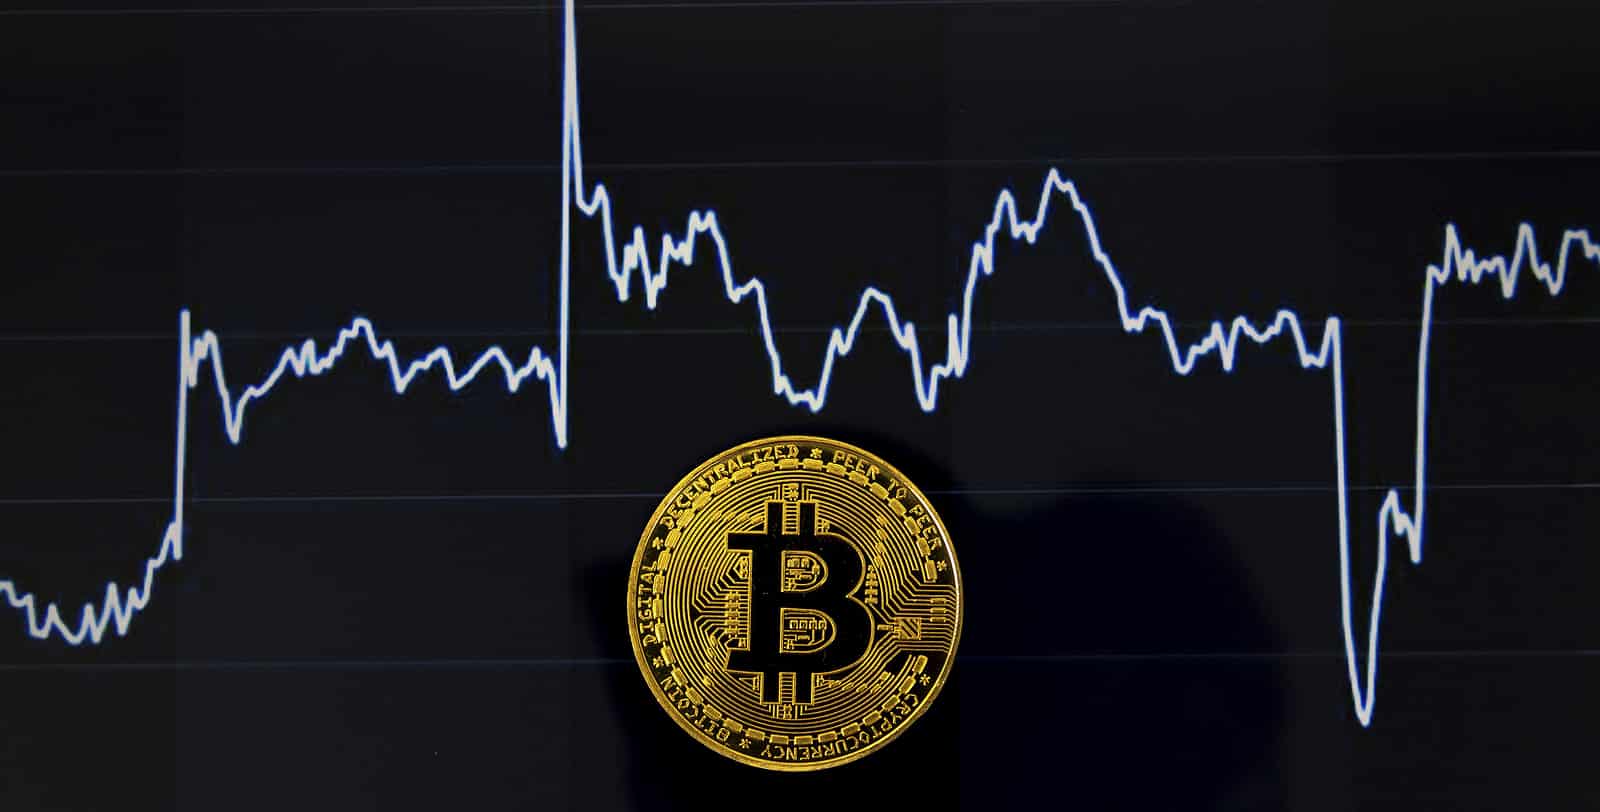 moeda de bitcoin com fundo preto e gráfico de preço atrás